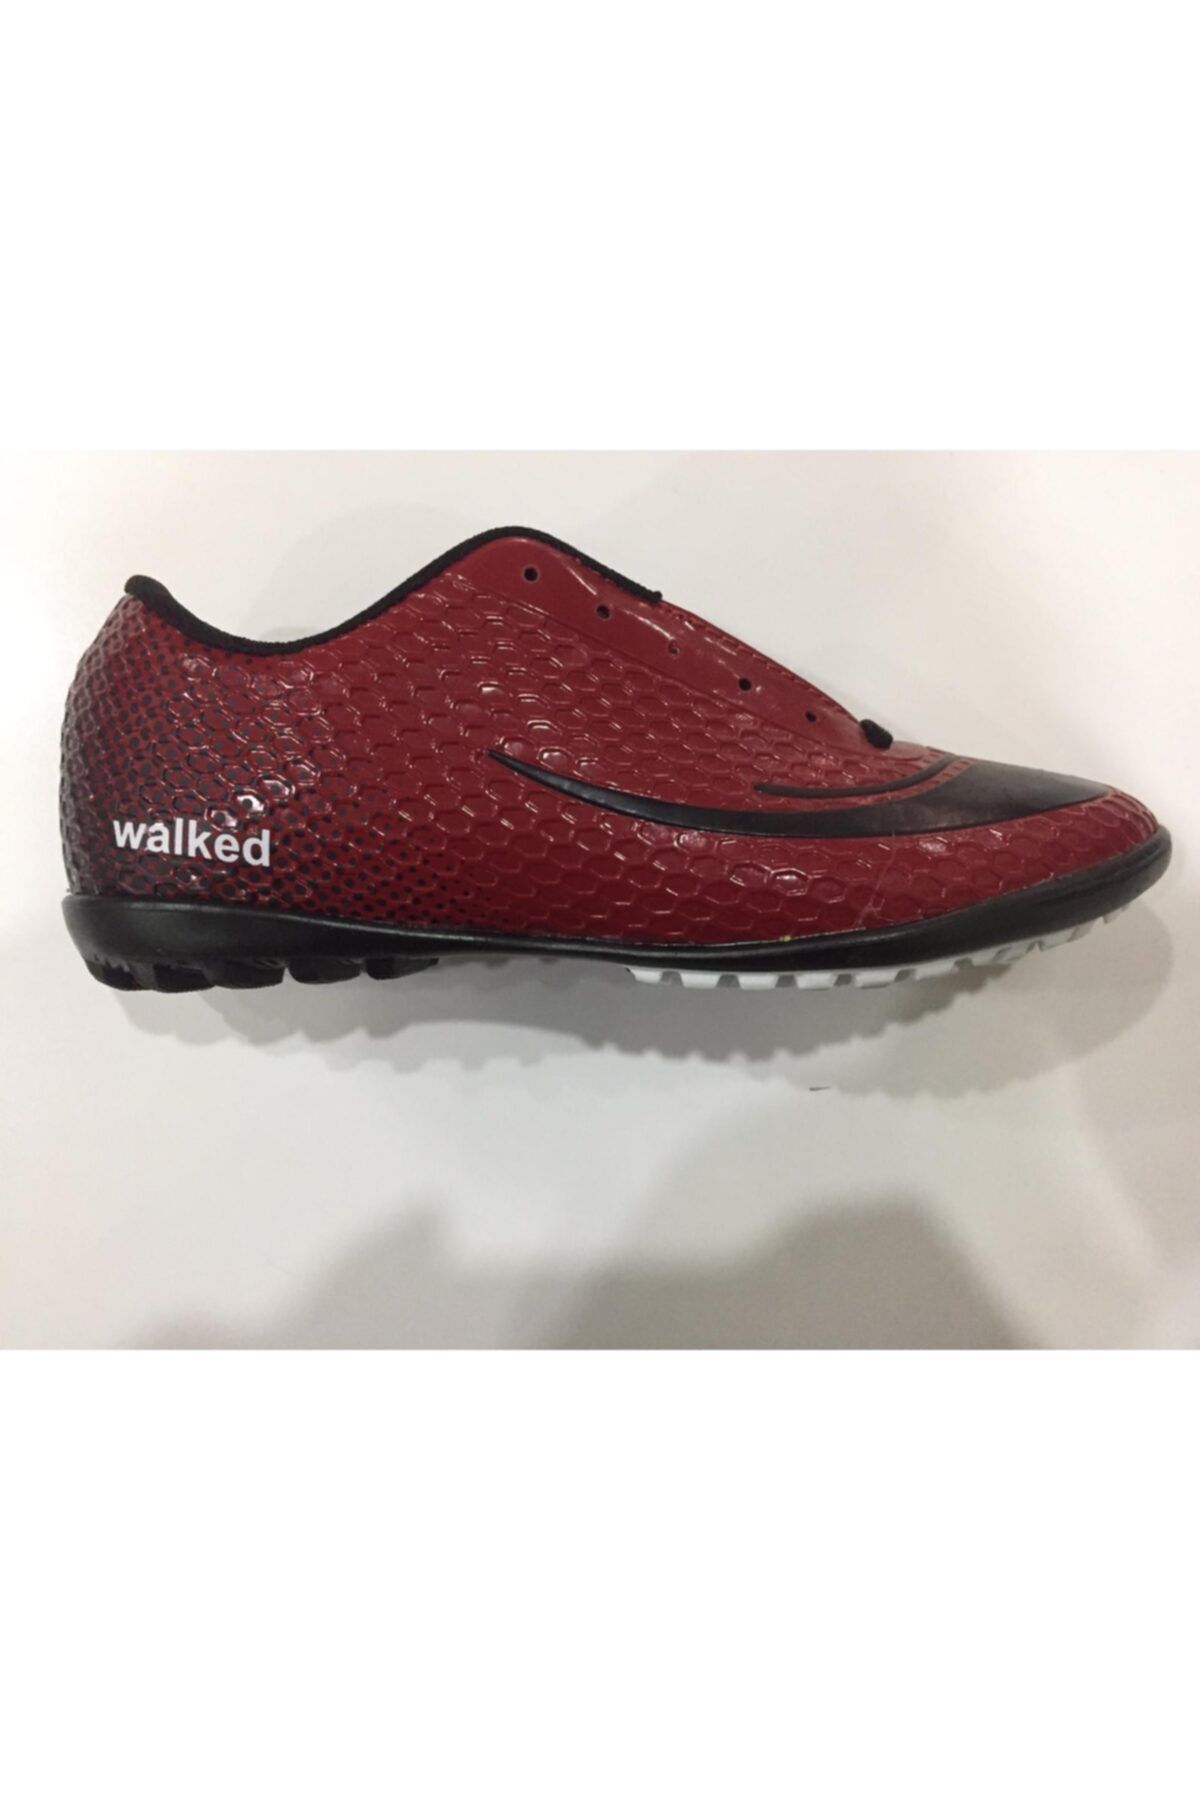 Walked Unisex Kırmızı Halısaha Spor Ayakkabı